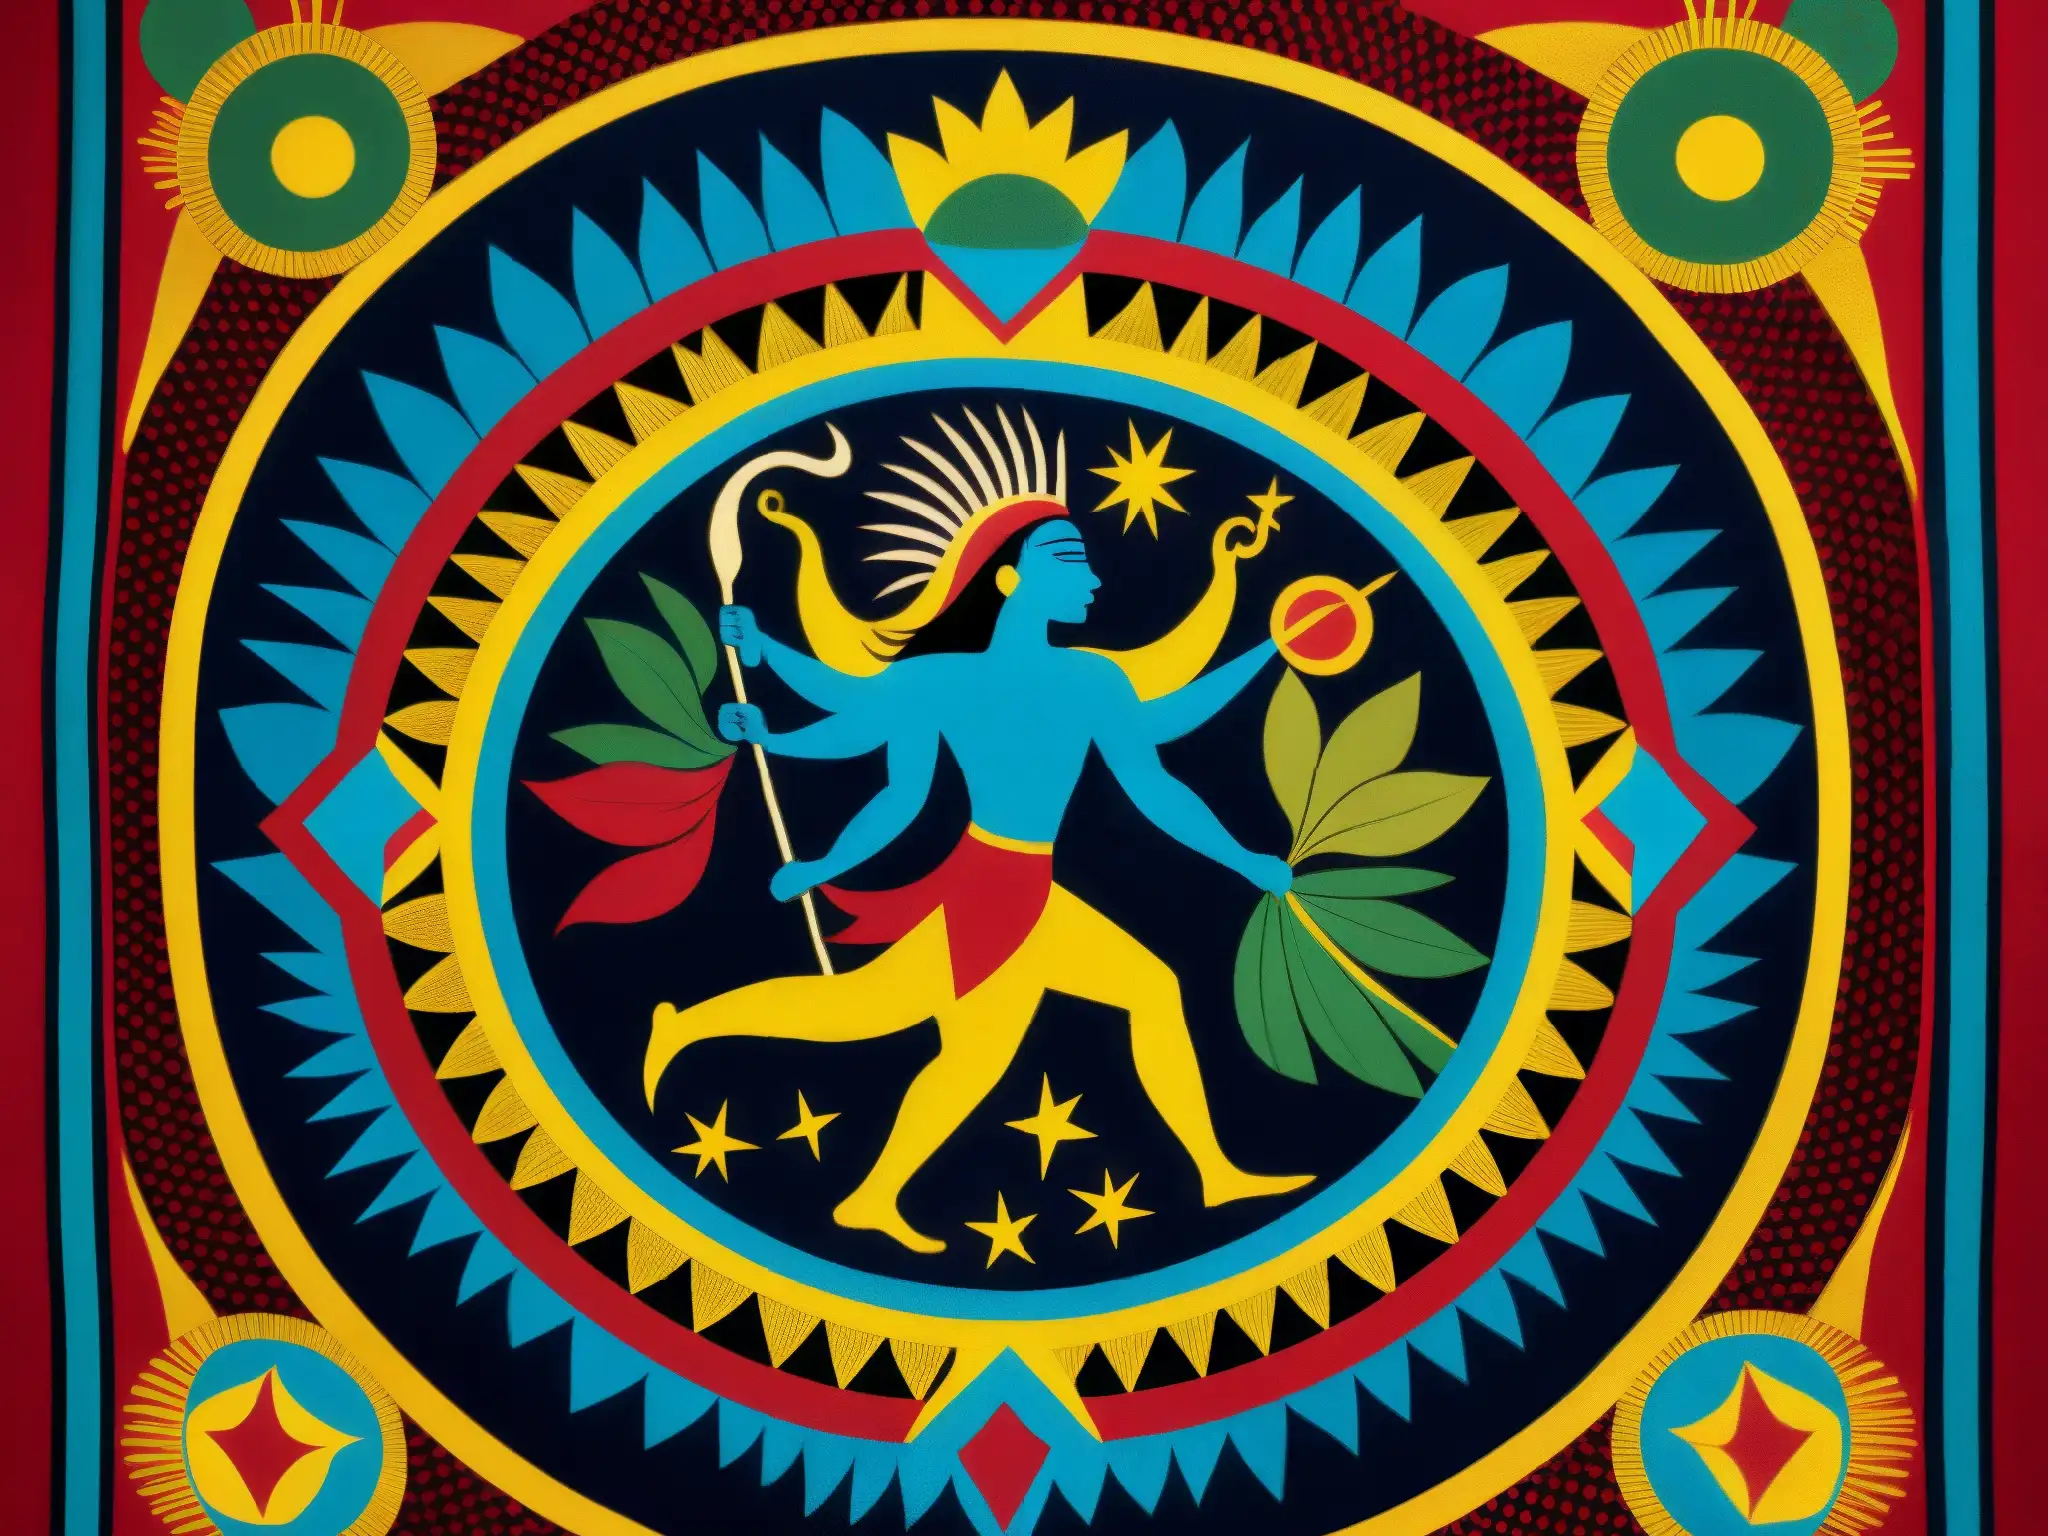 Magnífico tapiz guaraní representa el mito de la creación por Tupã, con colores vibrantes y detalles intrincados